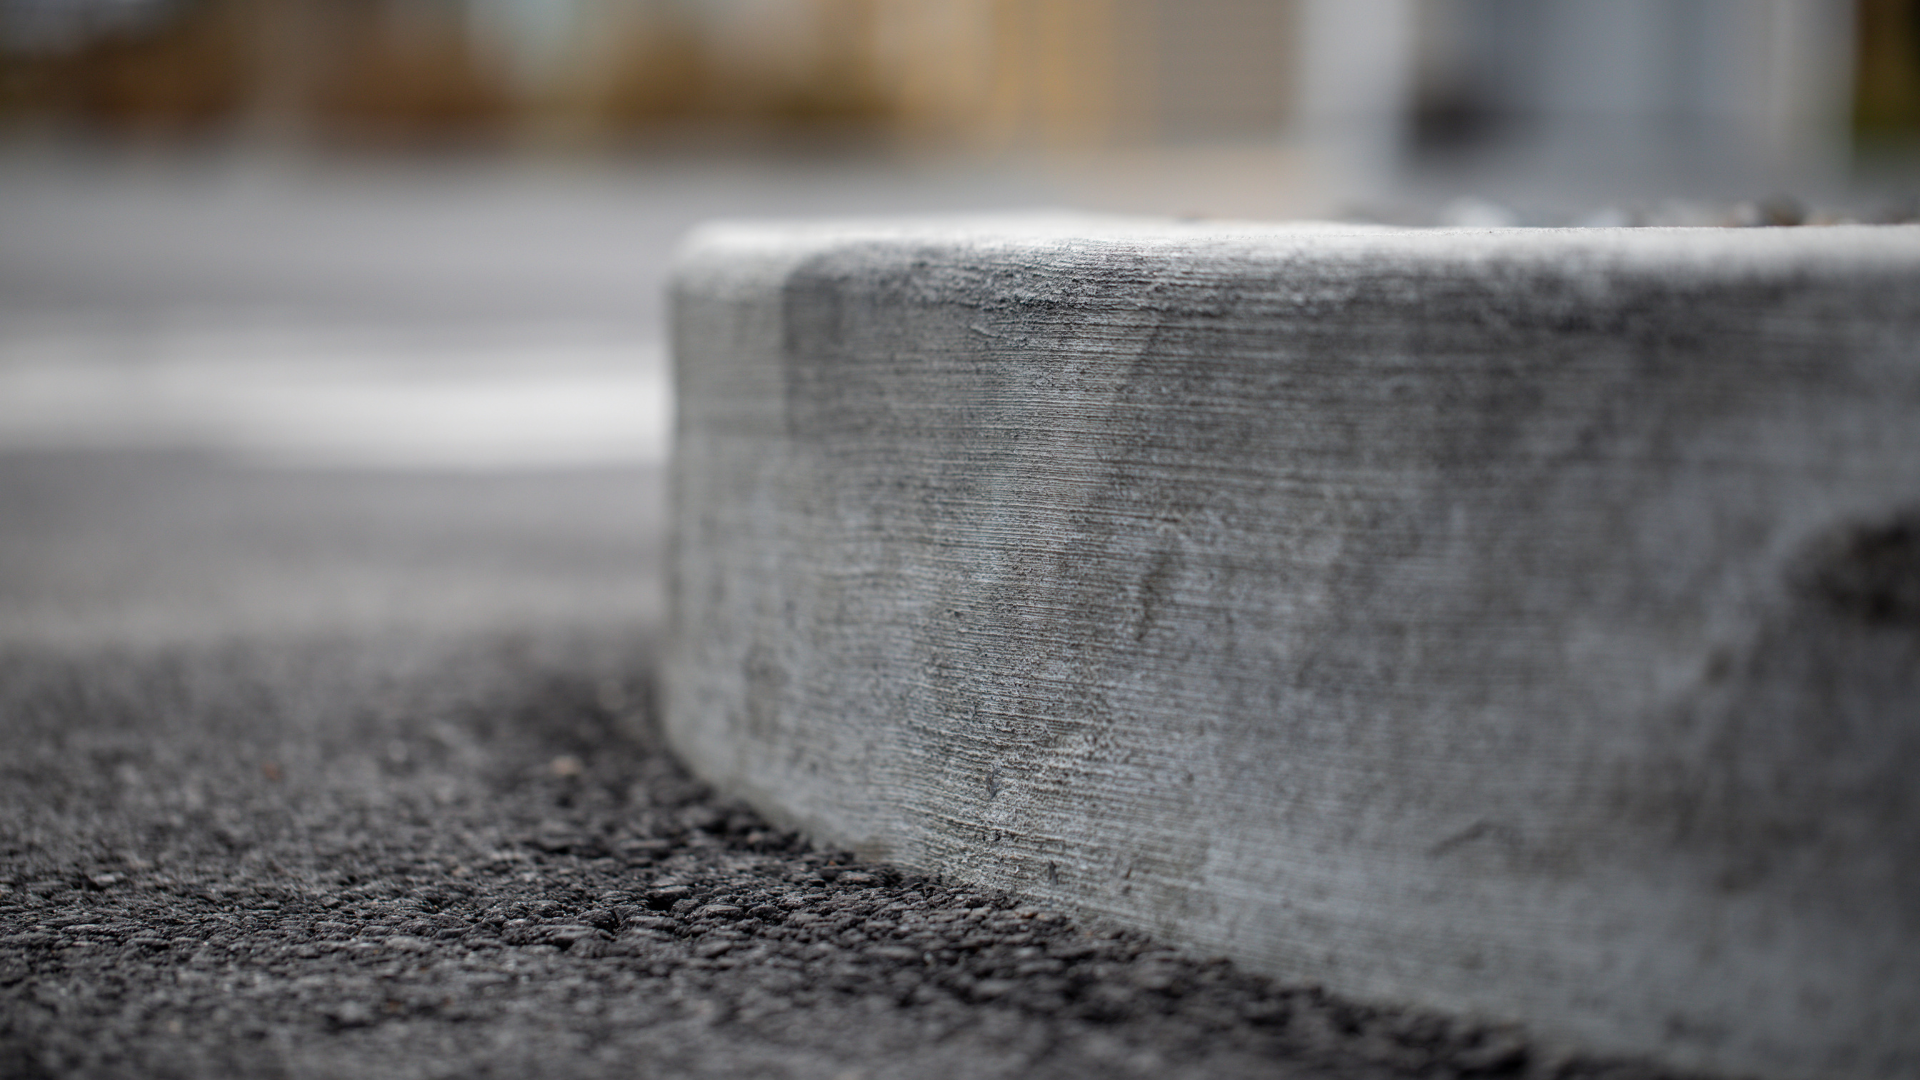 Construction ABL bordure de béton pour stationnement gatineau outaouais